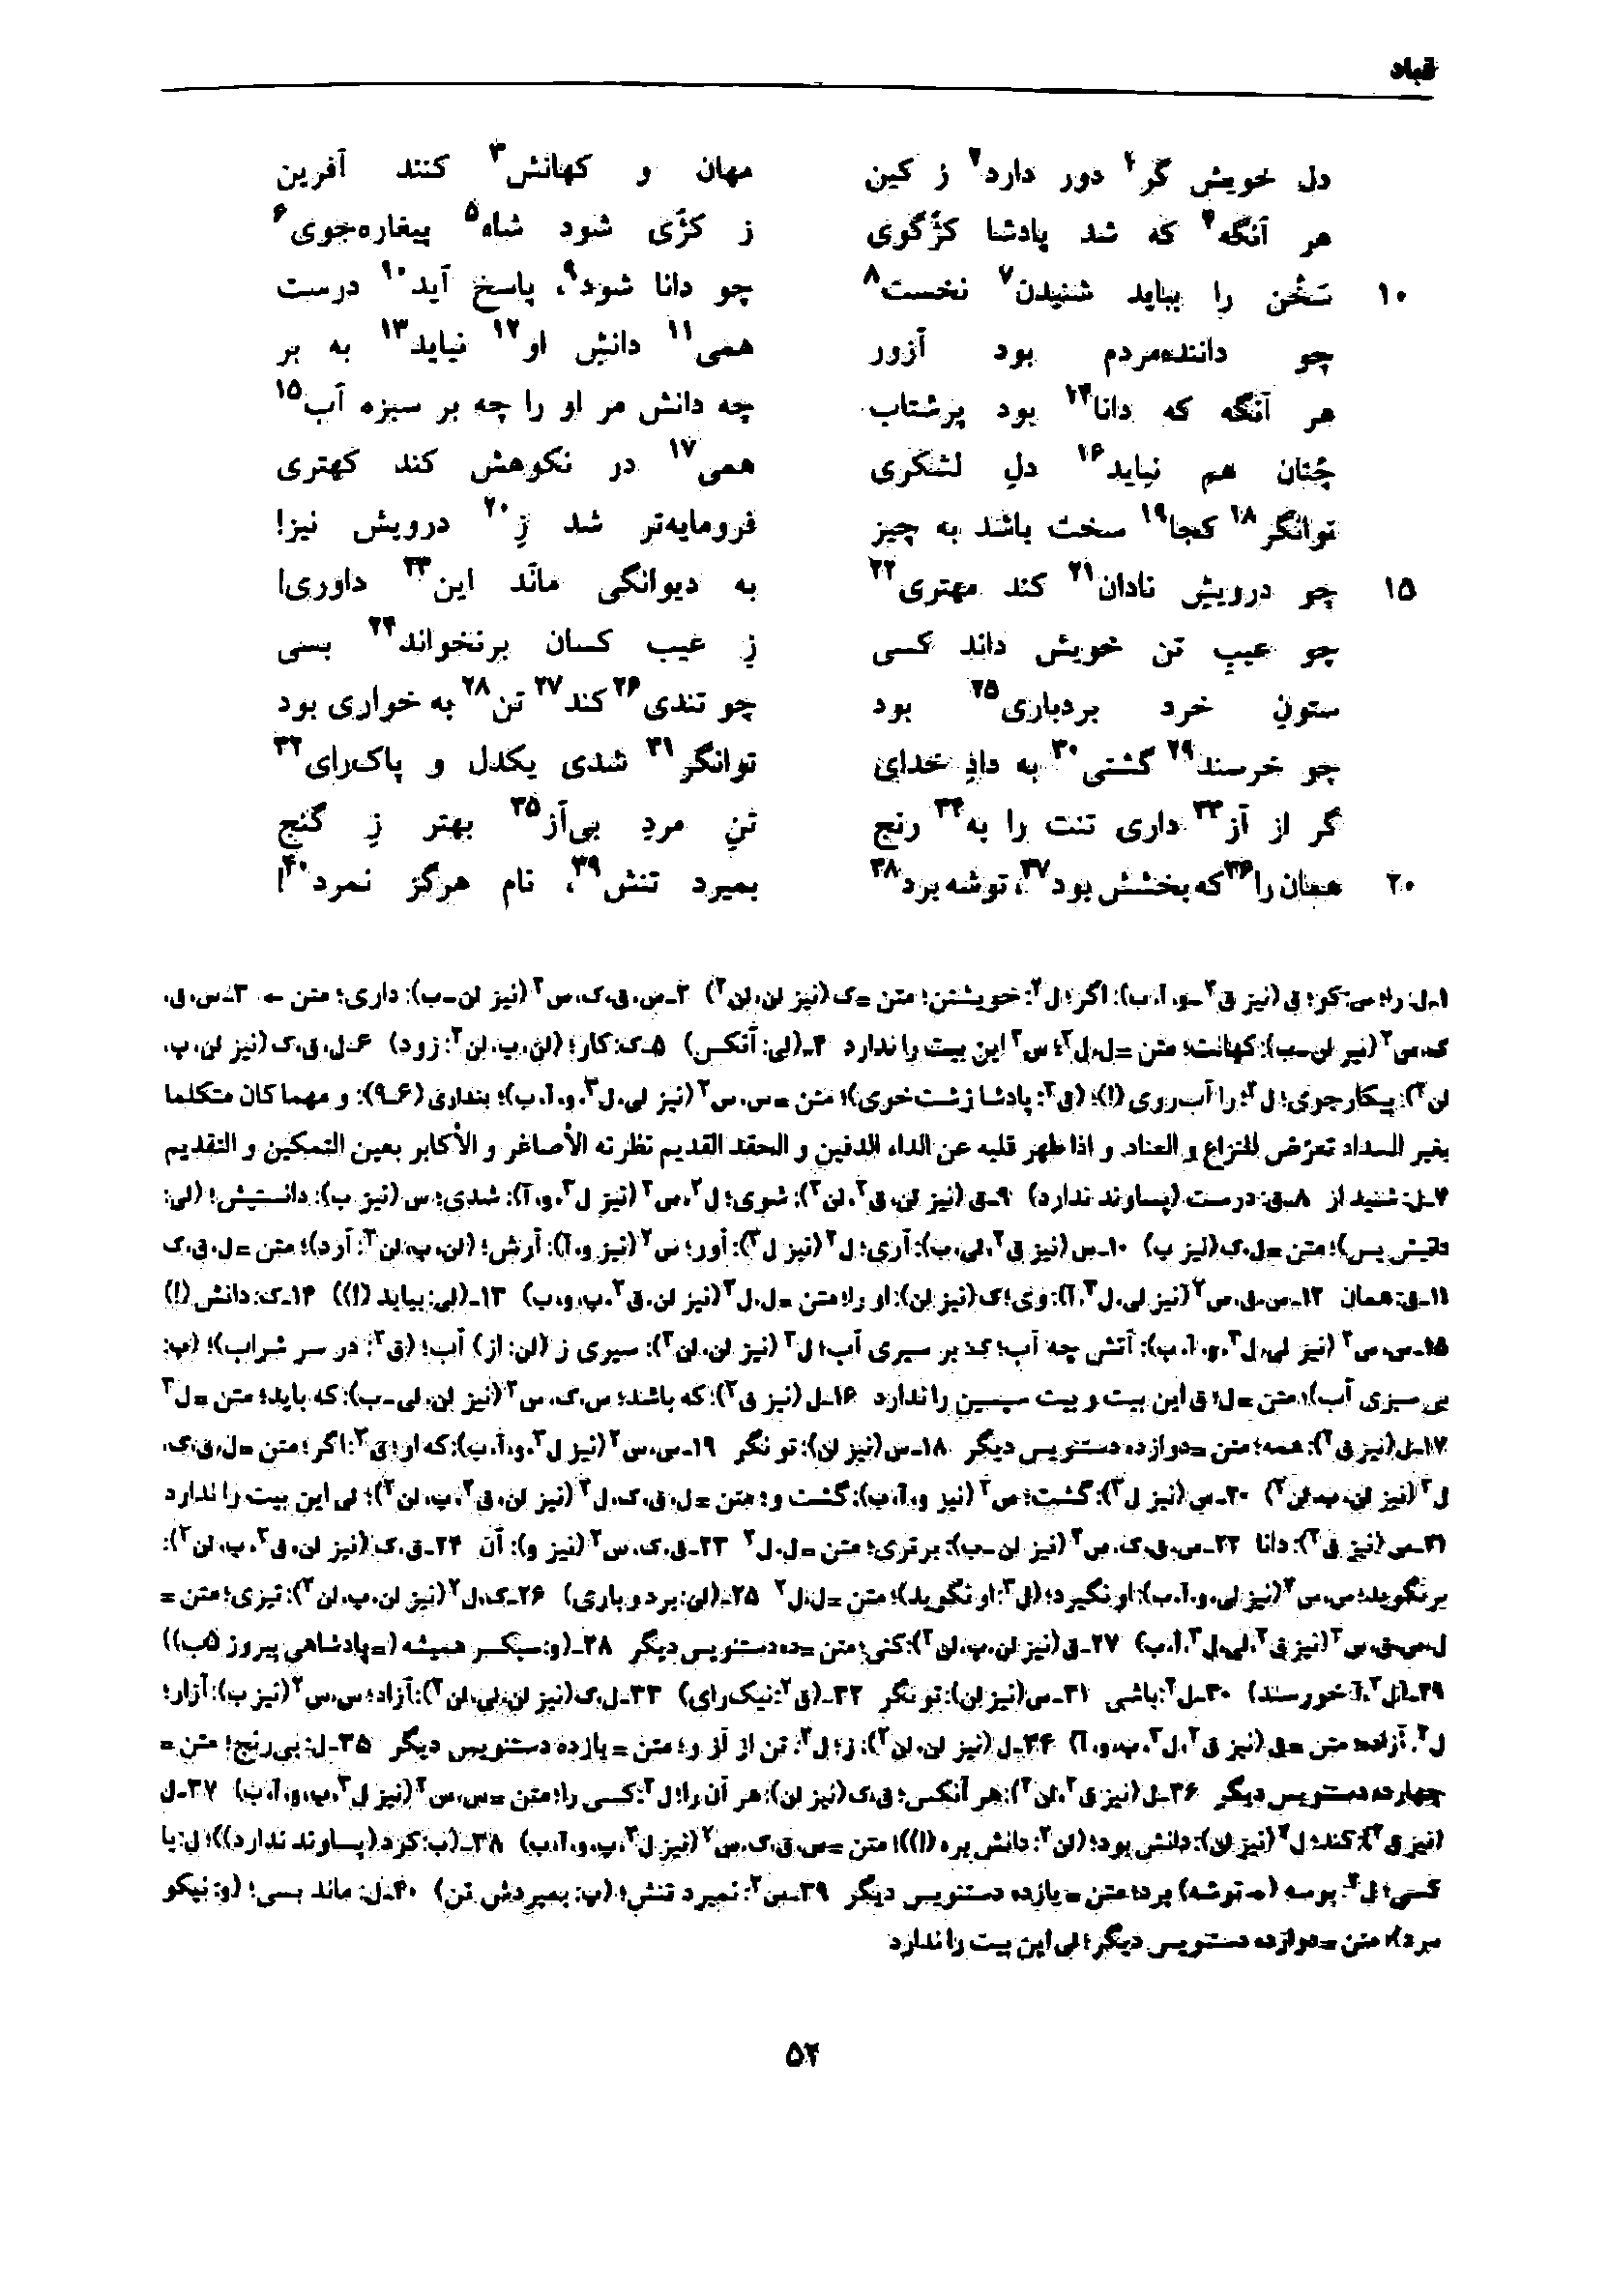 vol. 7, p. 52